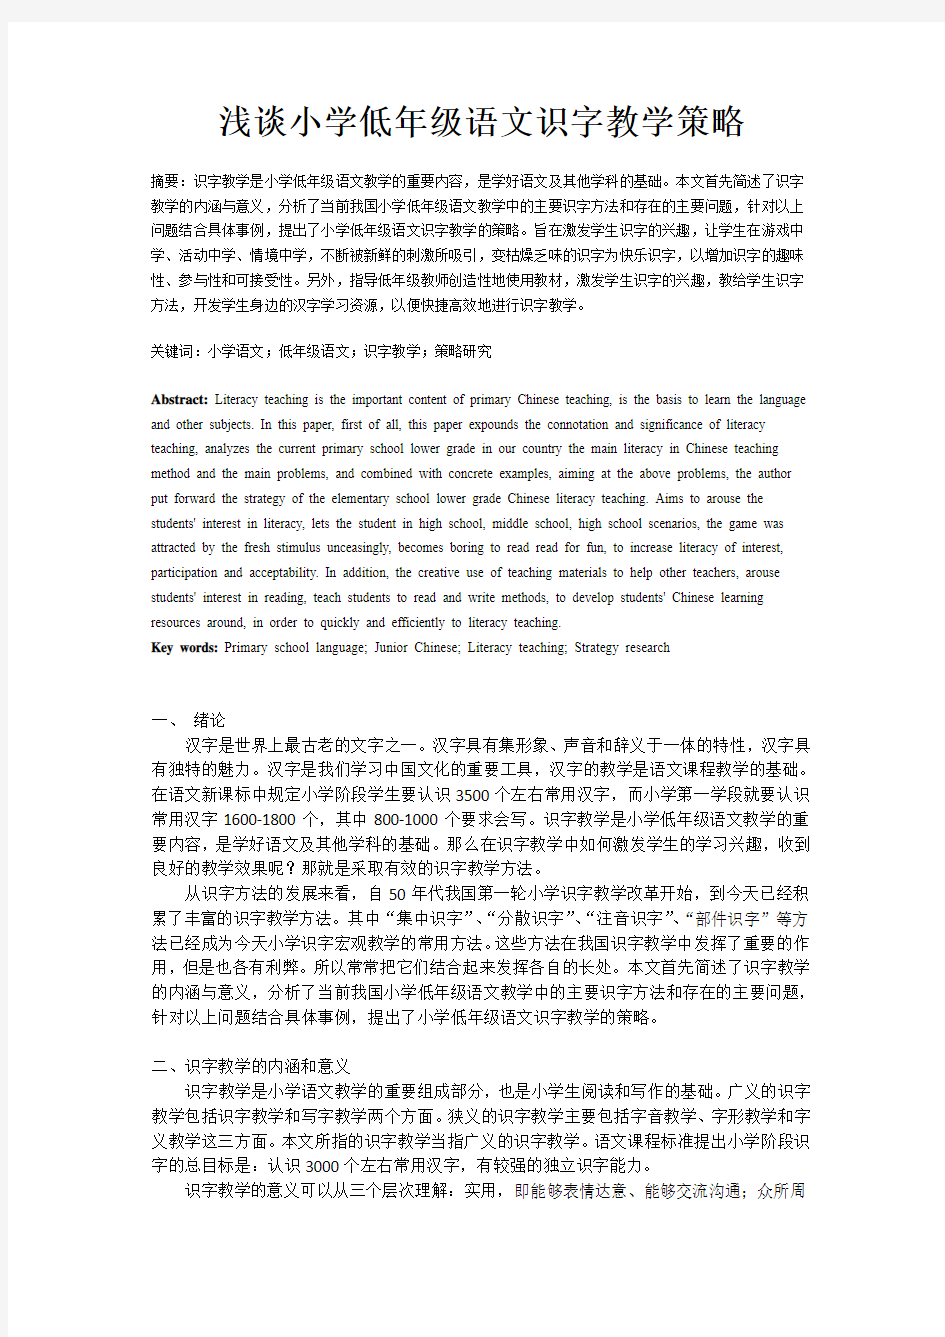 240修改zhang20140227M浅谈小学低年级语文识字教学策略